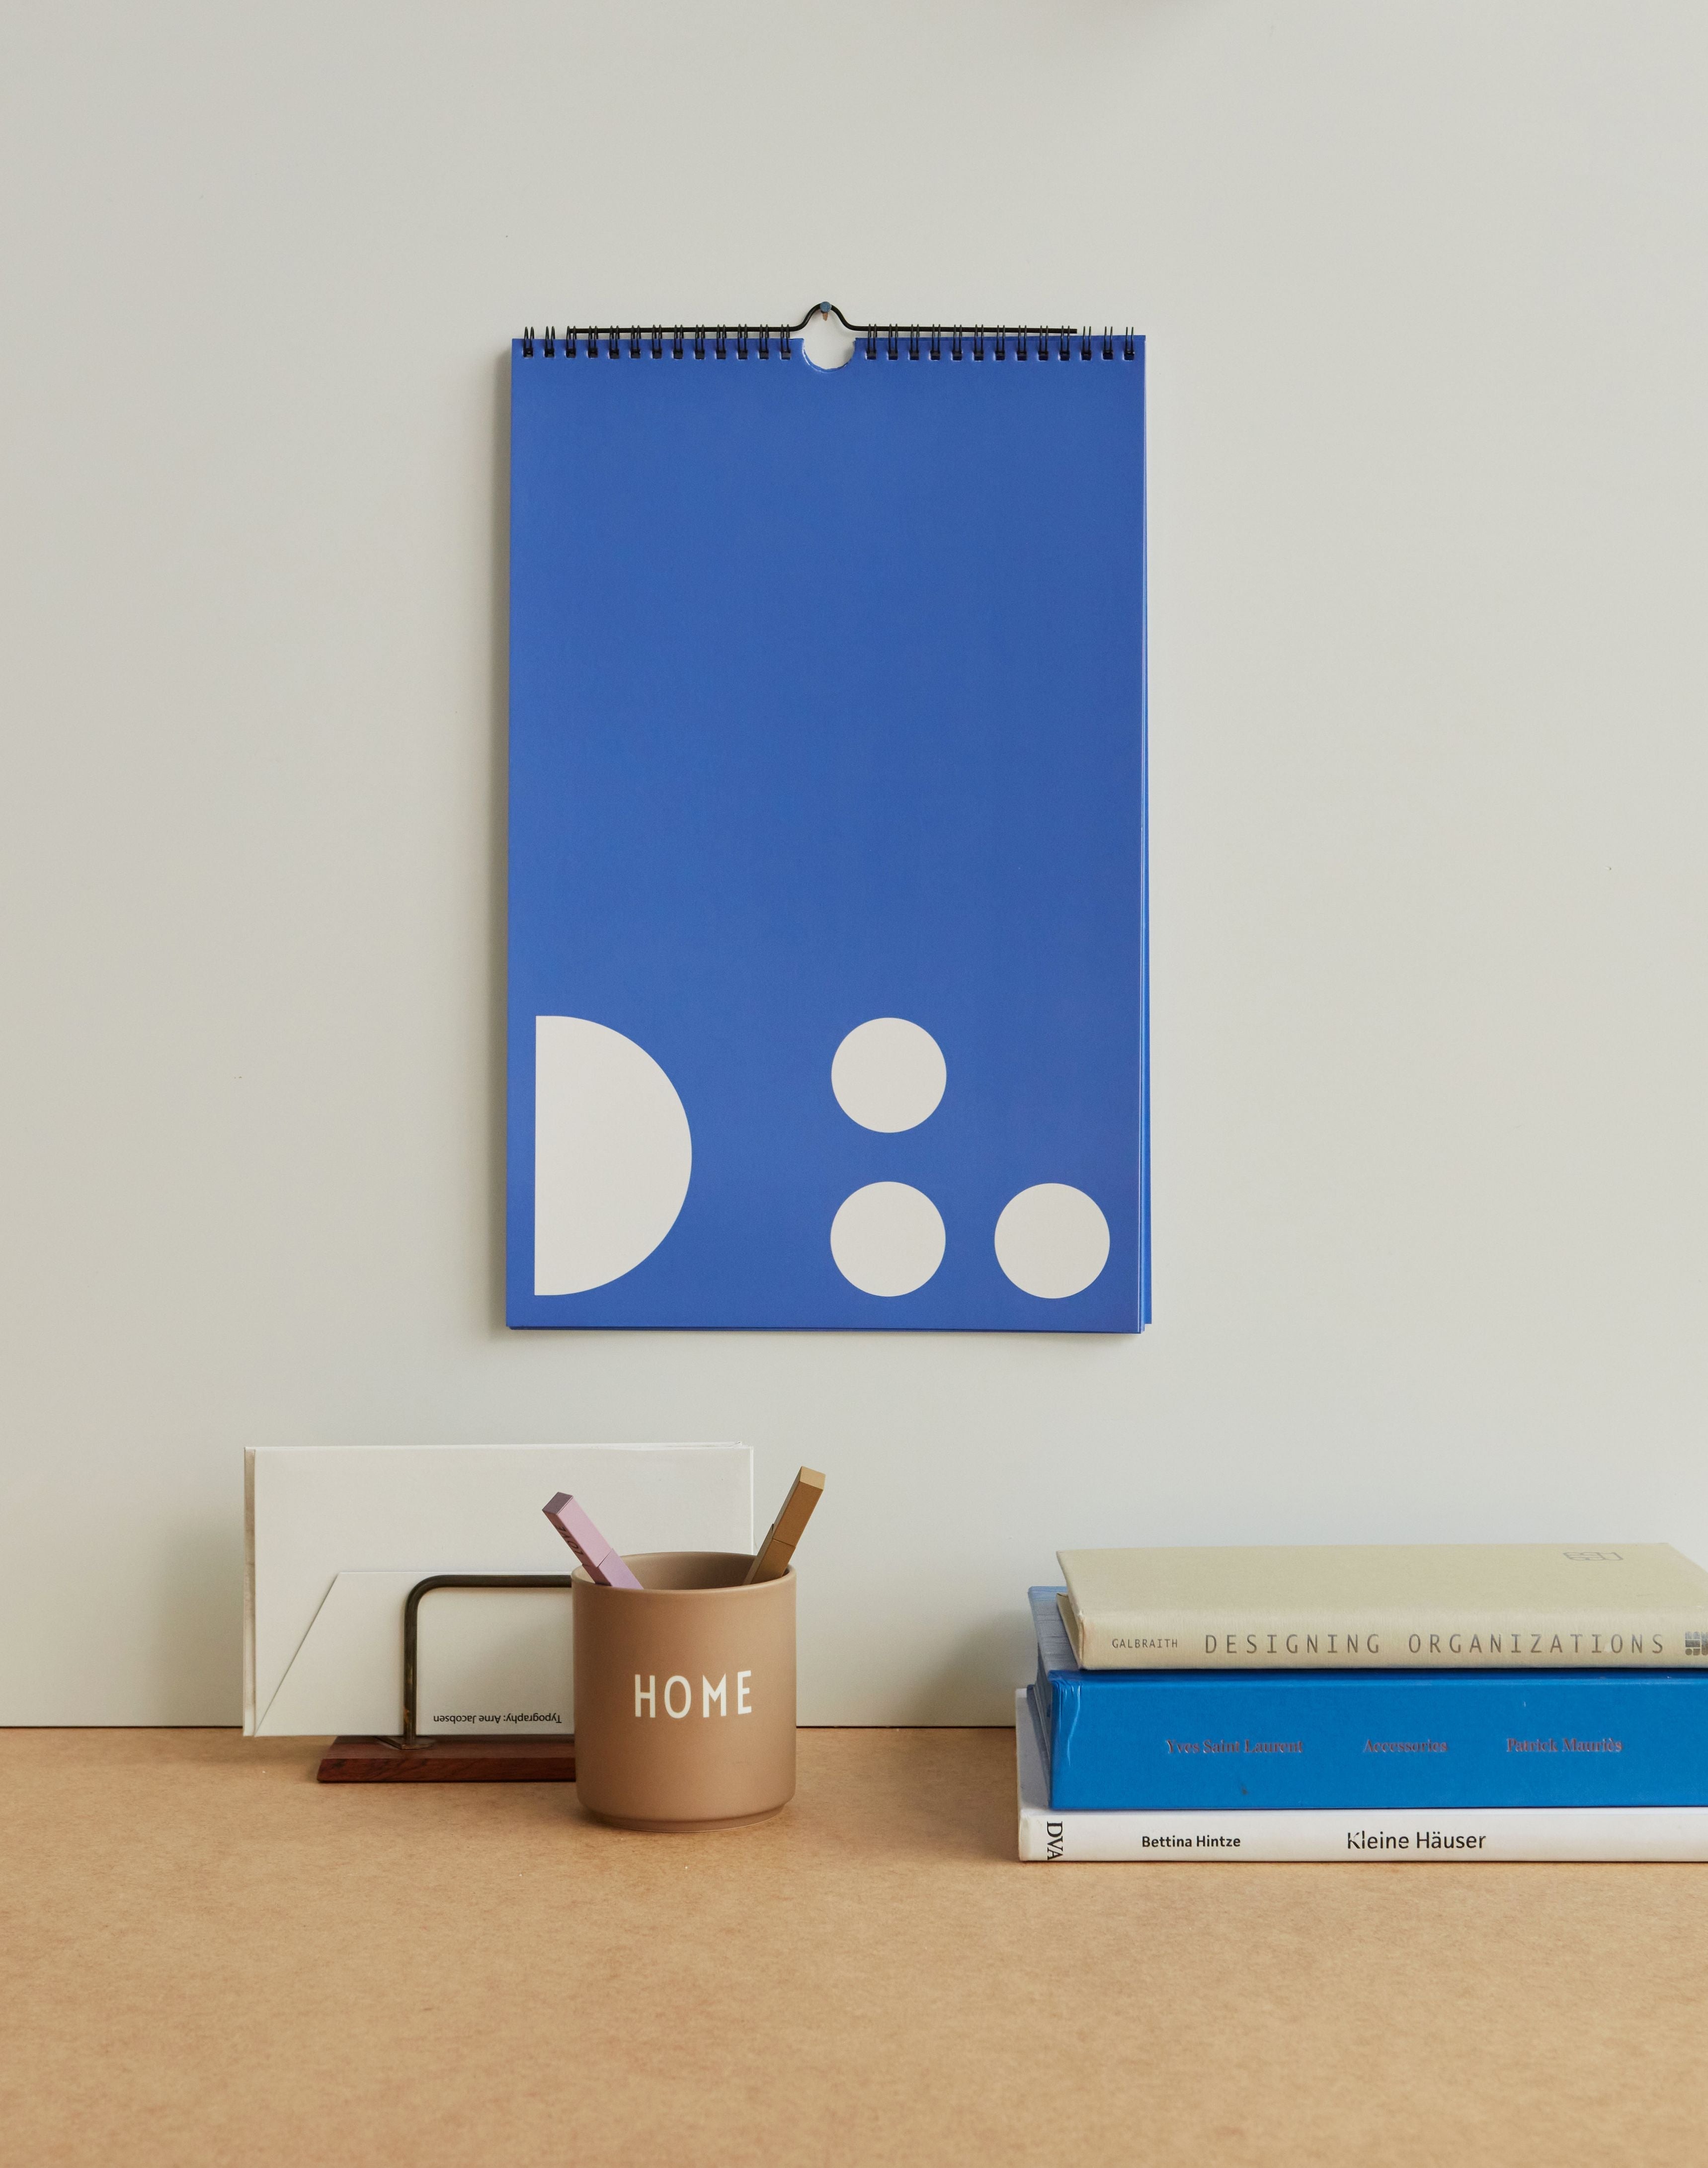 Design Letters Monthly Planner, Cobalt Blue